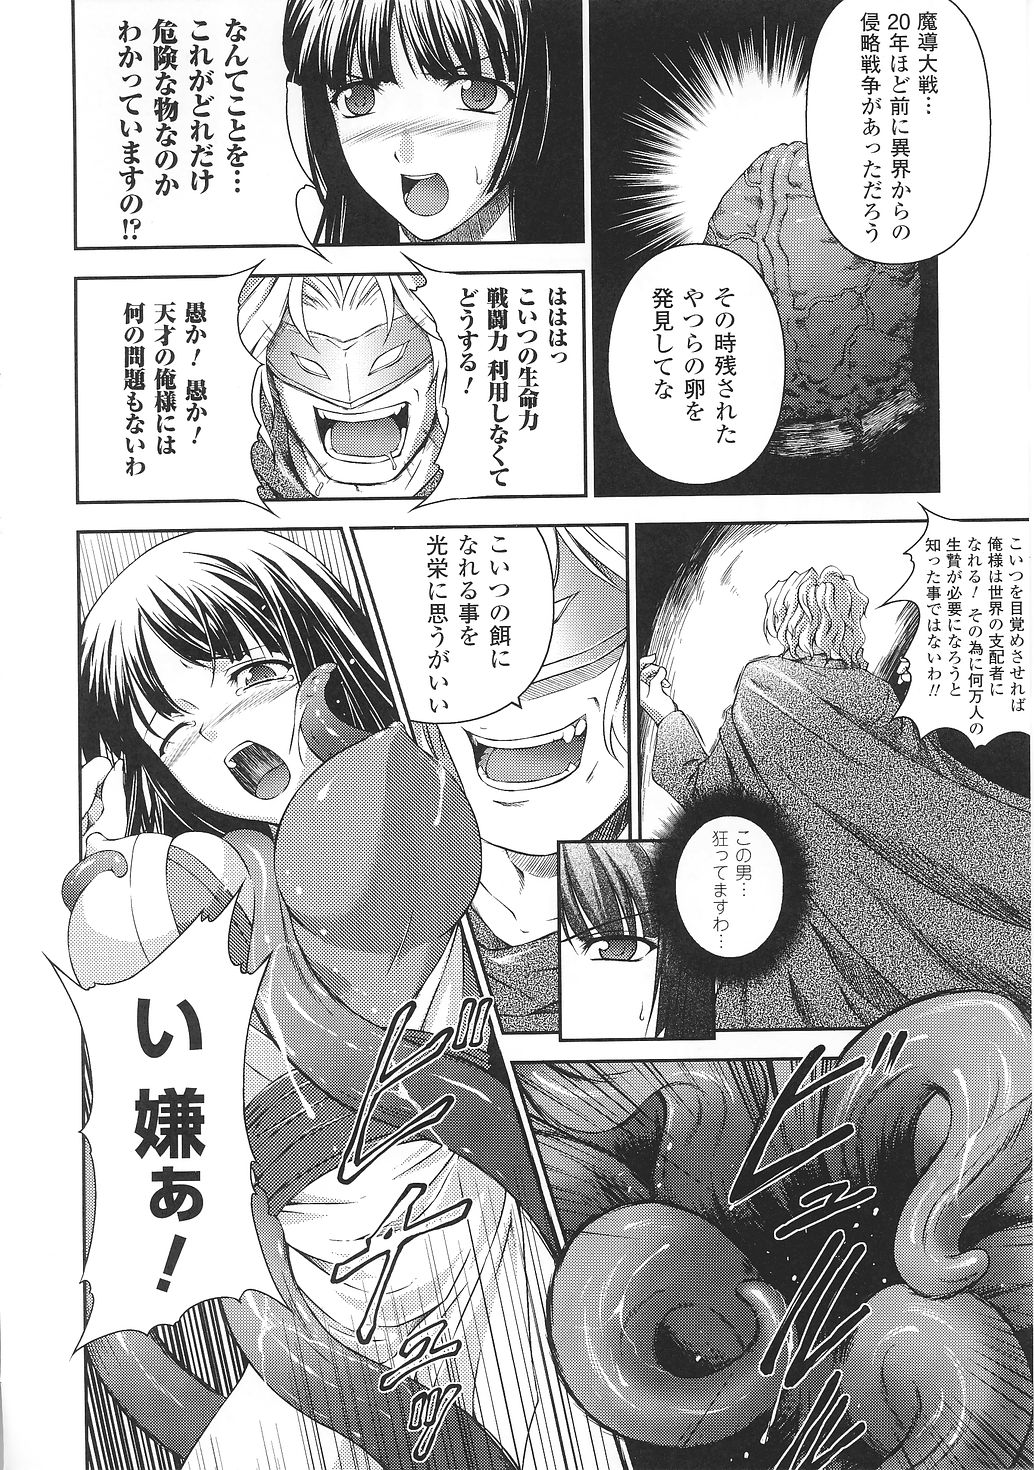 [Anthology] Tatakau Heroine Ryoujoku Anthology Toukiryoujoku 31 page 41 full